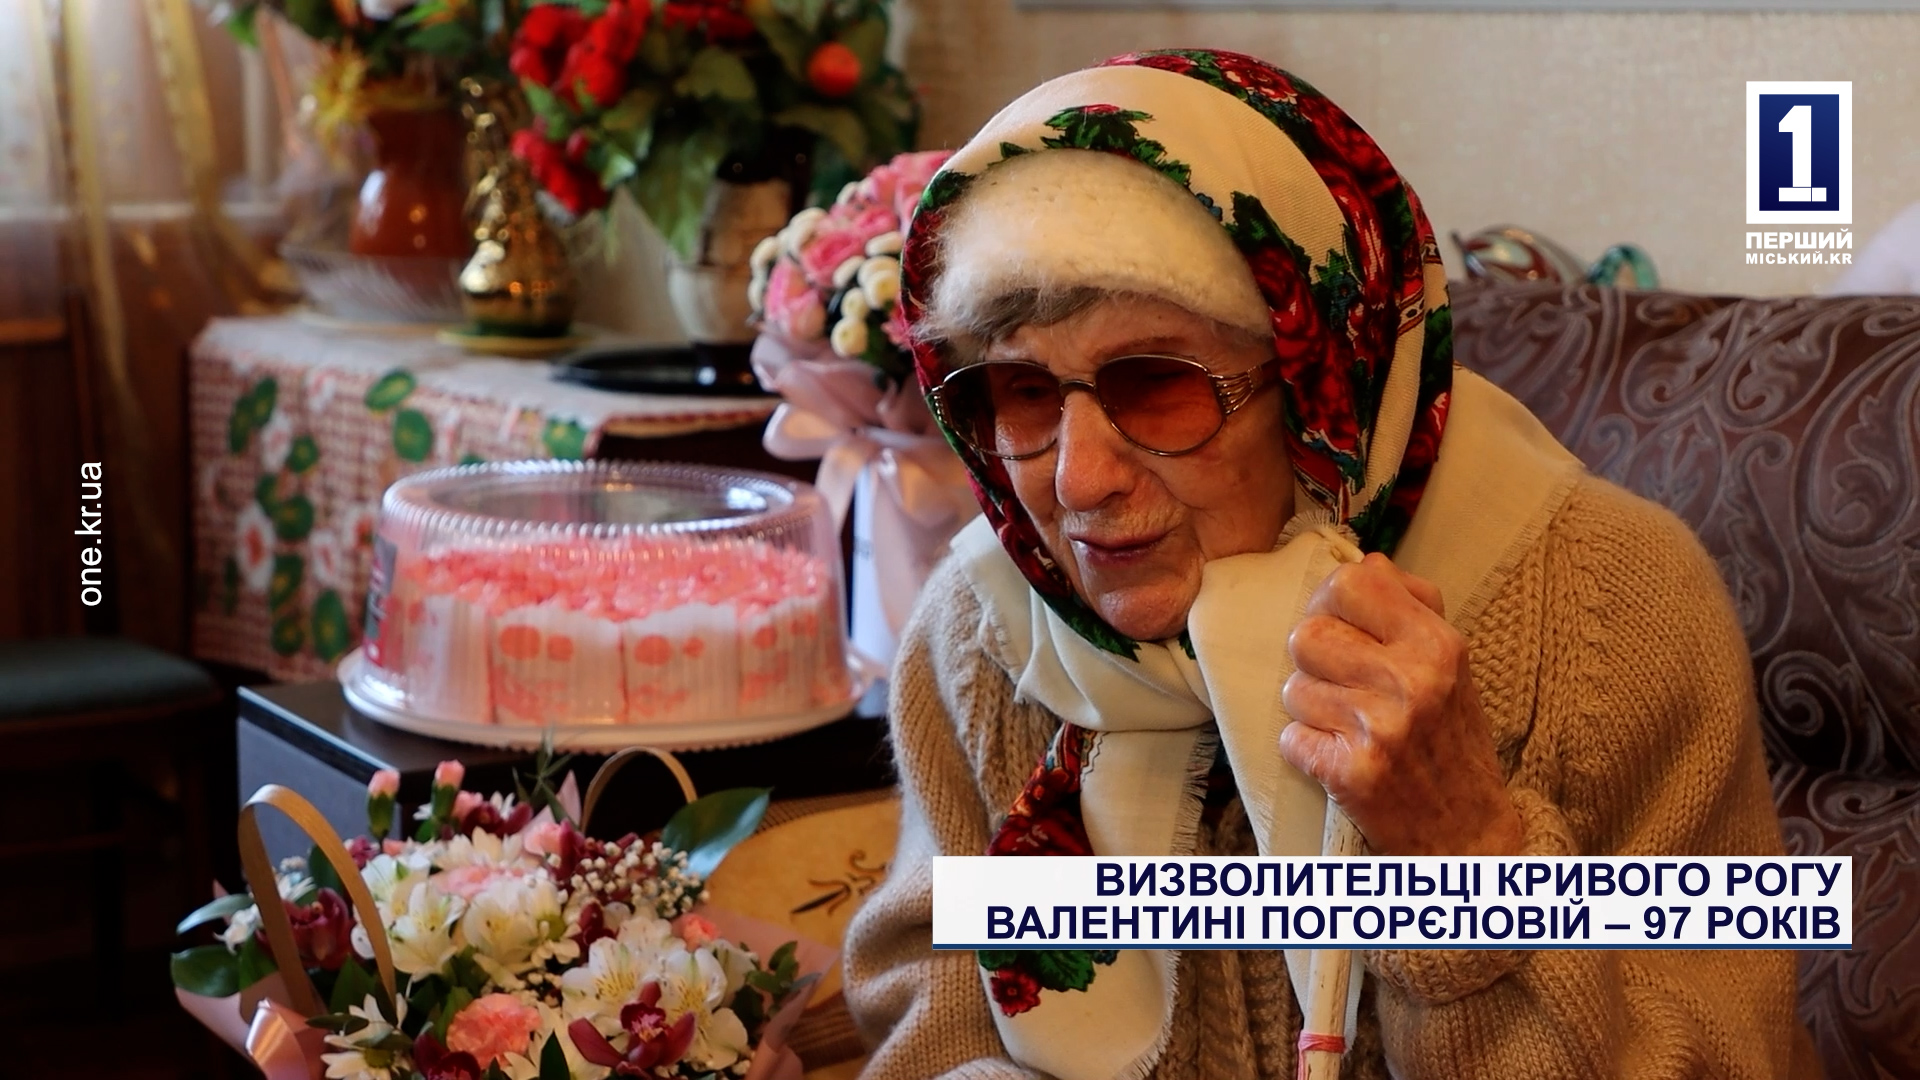 Визволительці Кривого Рогу Валентині Погорєловій – 97 років